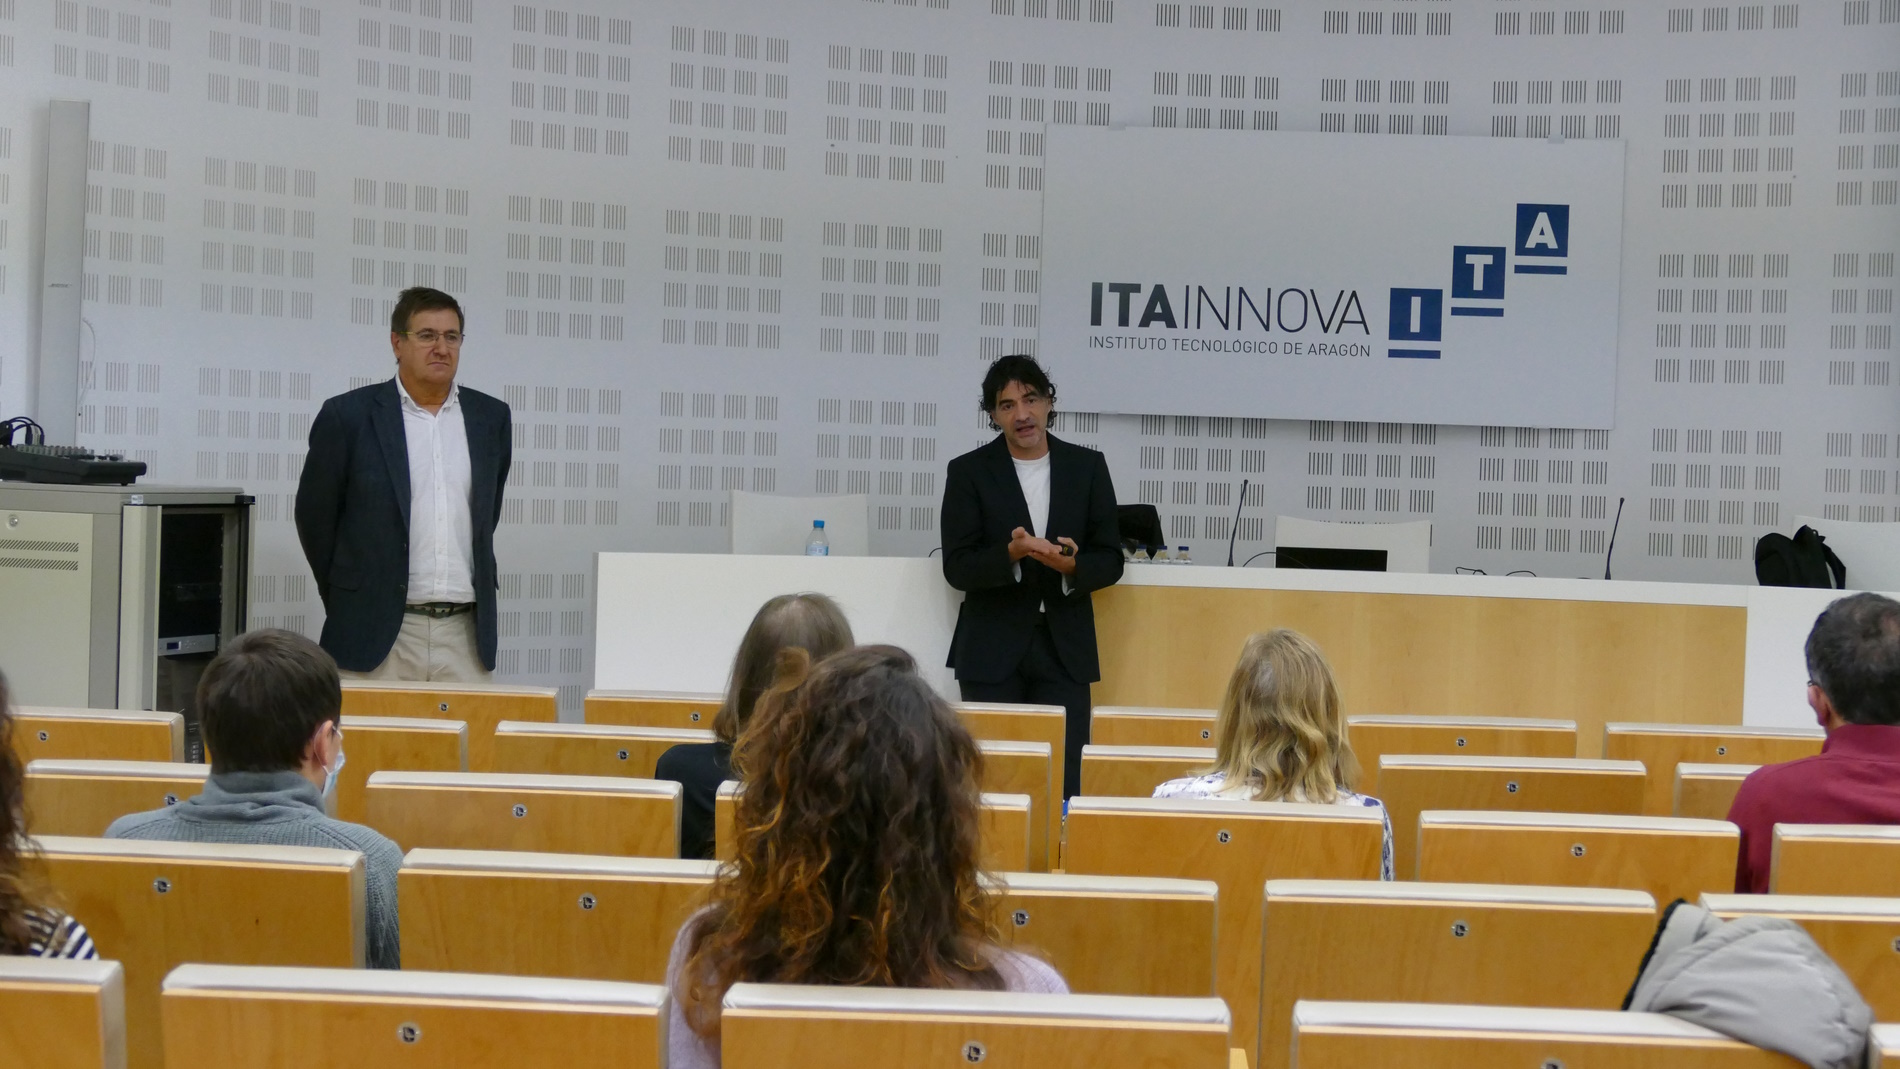 Mettler-Toledo organiza una jornada técnica en ITAINNOVA